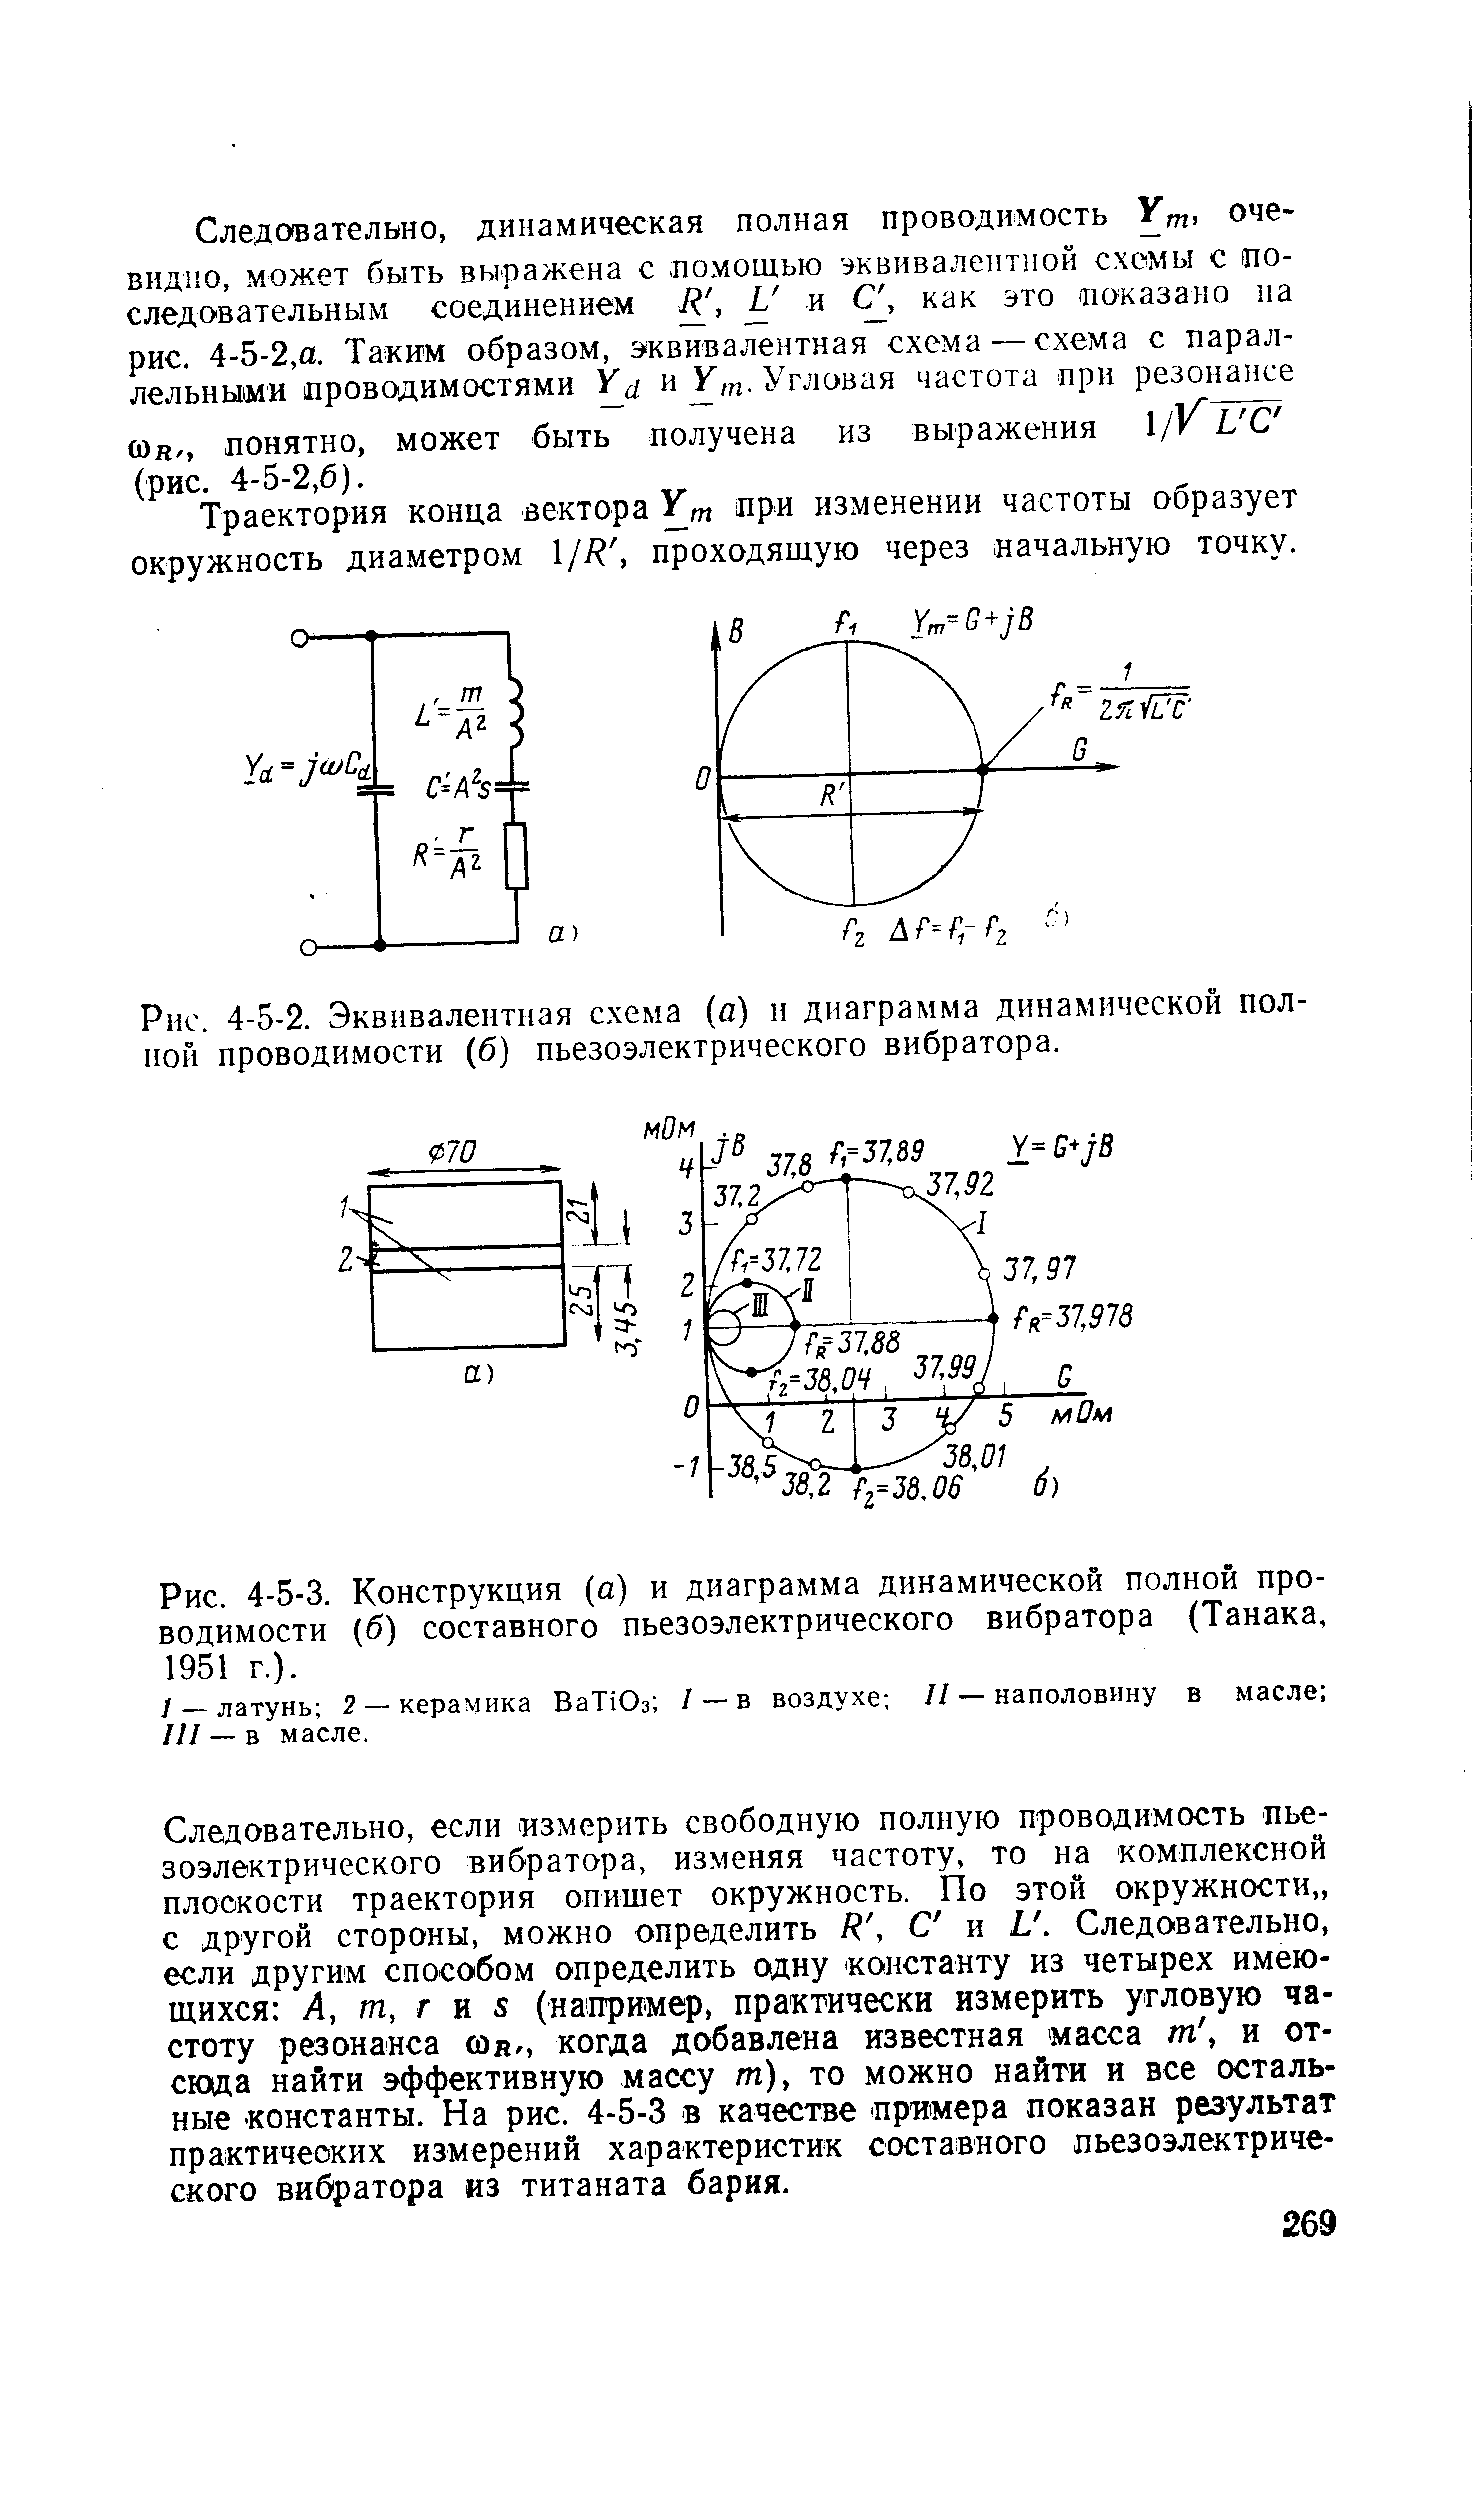 Рис. 4-5-3. Конструкция (а) и диаграмма динамической <a href="/info/341789">полной проводимости</a> (б) составного <a href="/info/320047">пьезоэлектрического вибратора</a> (Танака, 1951 г.).
